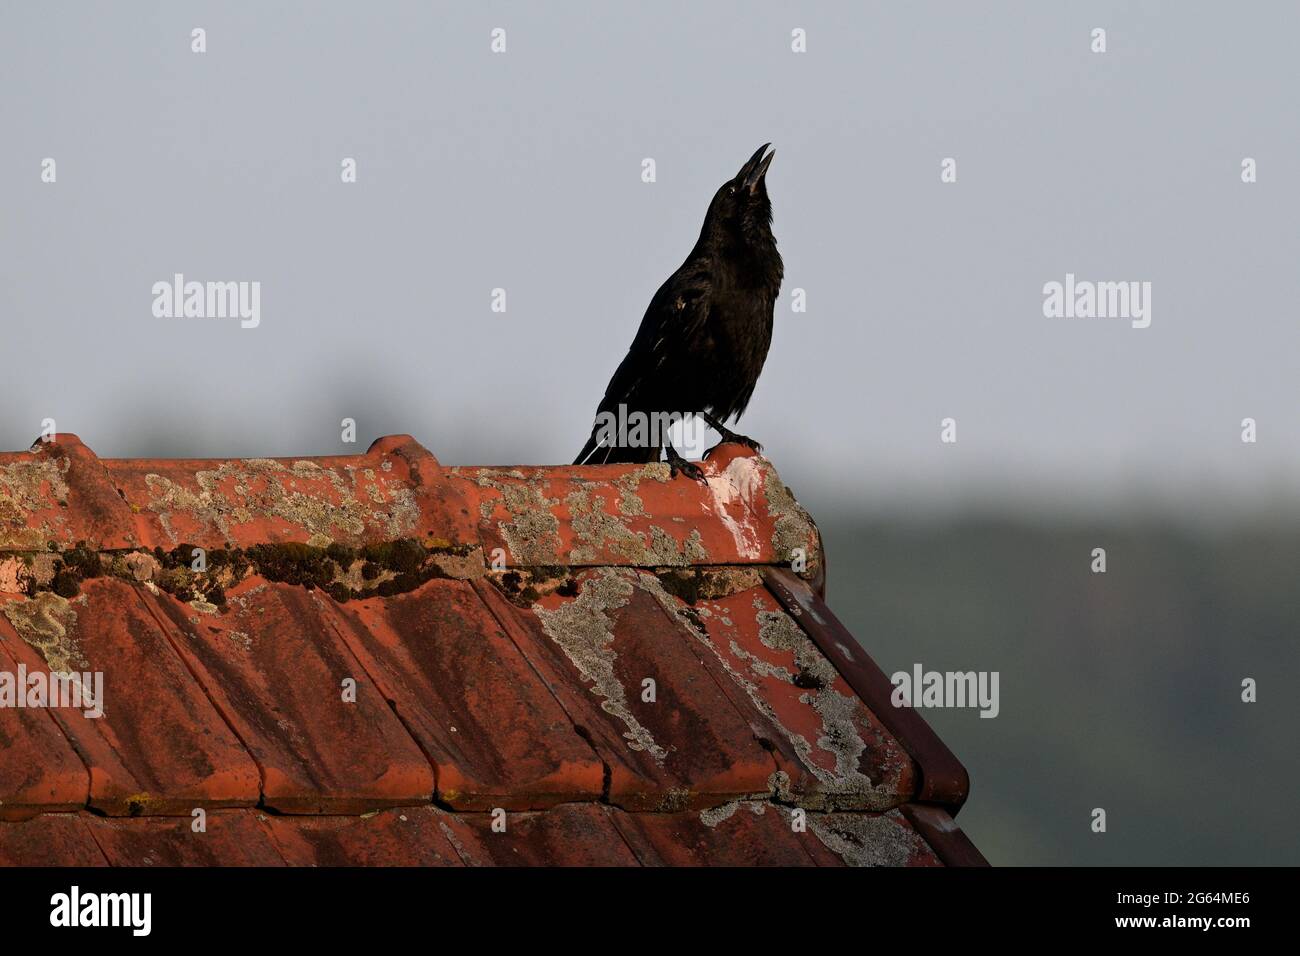 Carrian Crow on the roof; Aaskrähe auf dem Dach Stock Photo